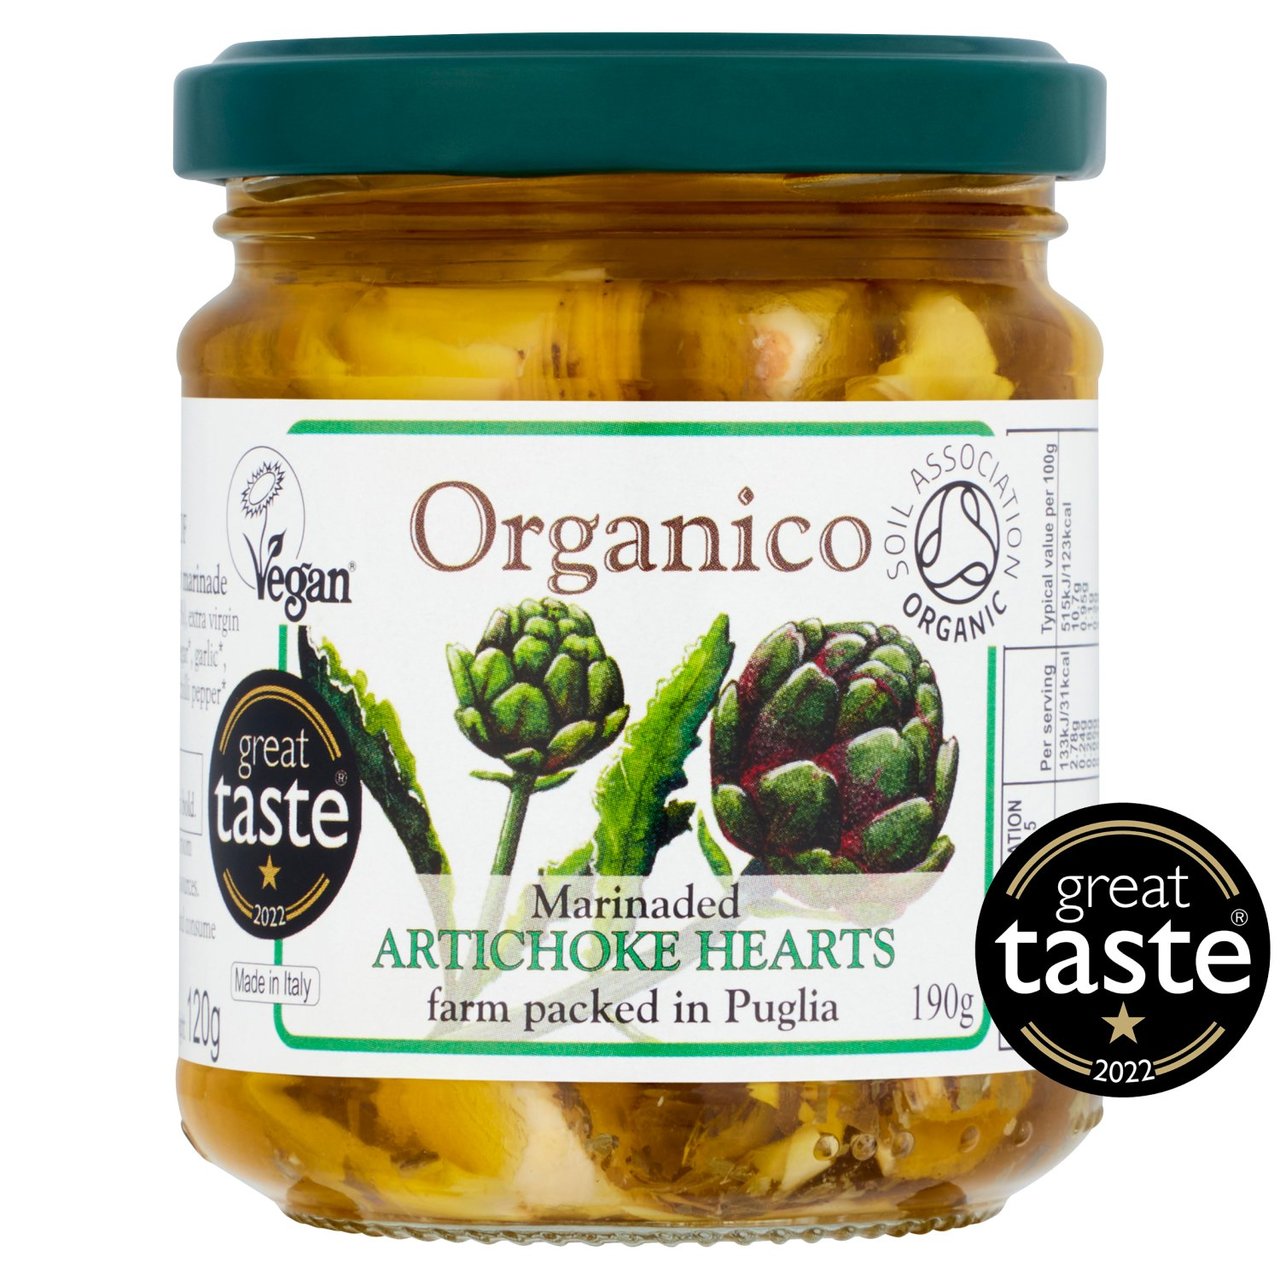 Organico Artichoke Hearts in Herb Marinade